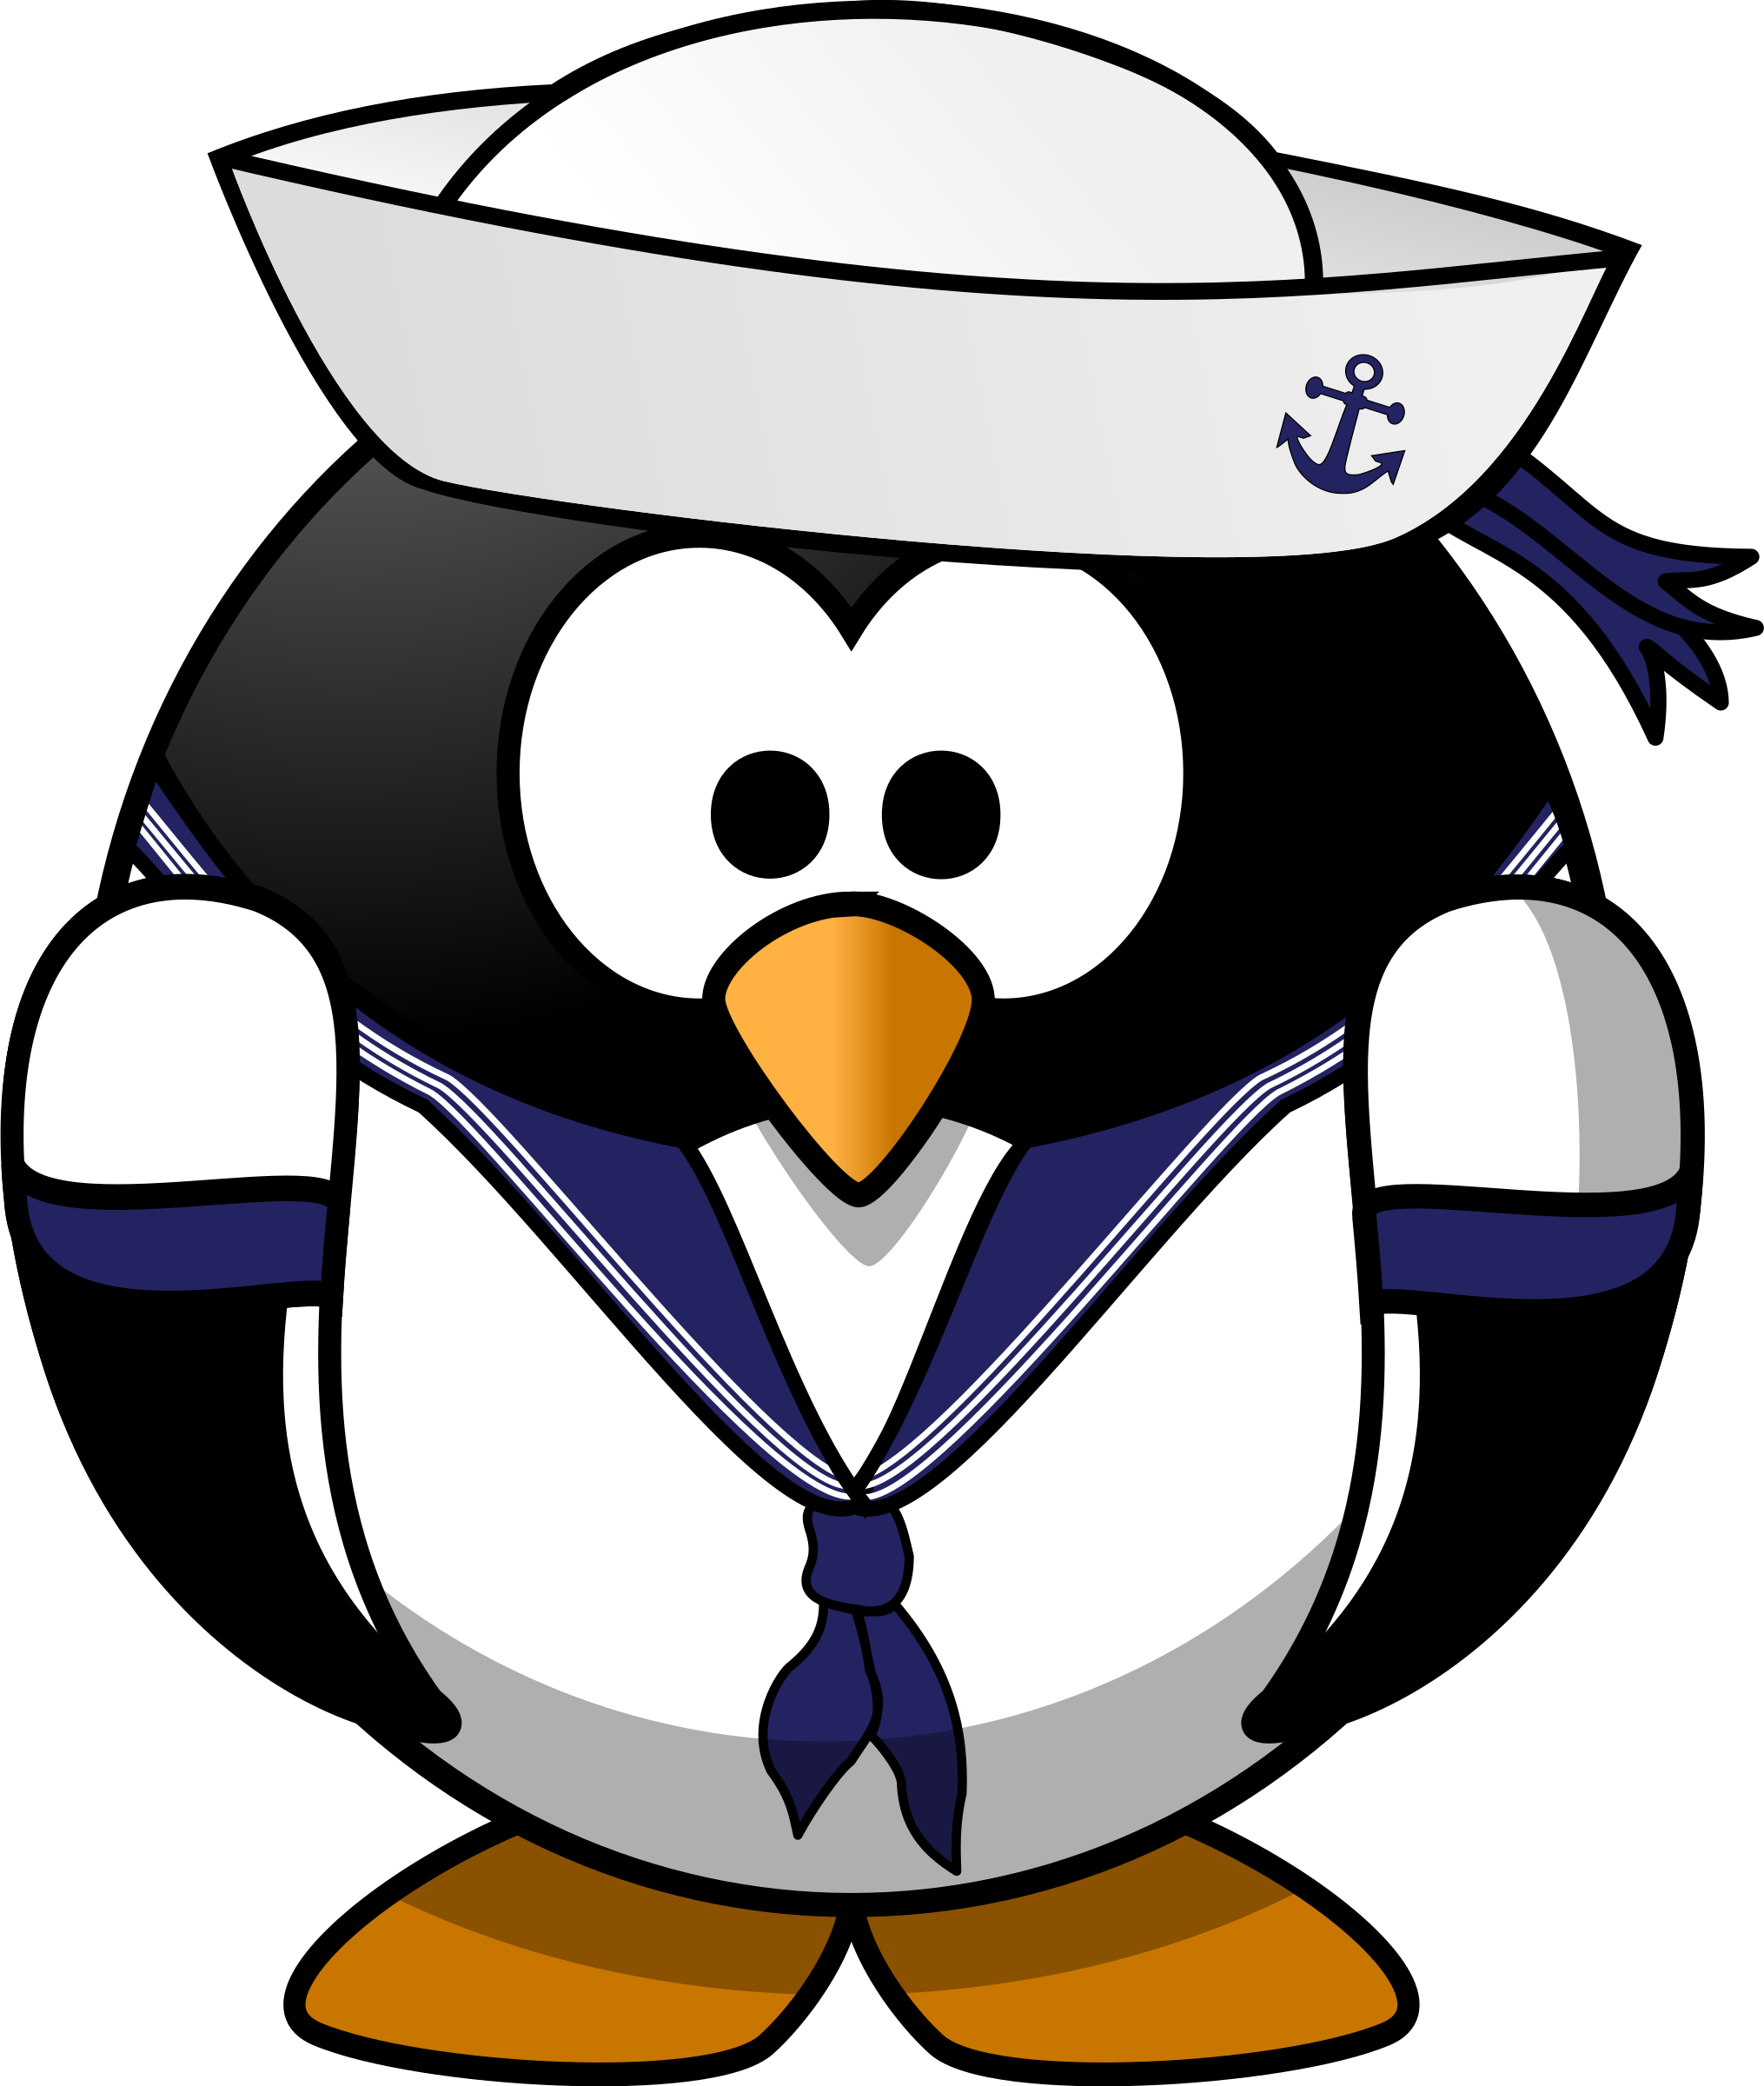 Sailor penguin big image. Clipart hat sailor's